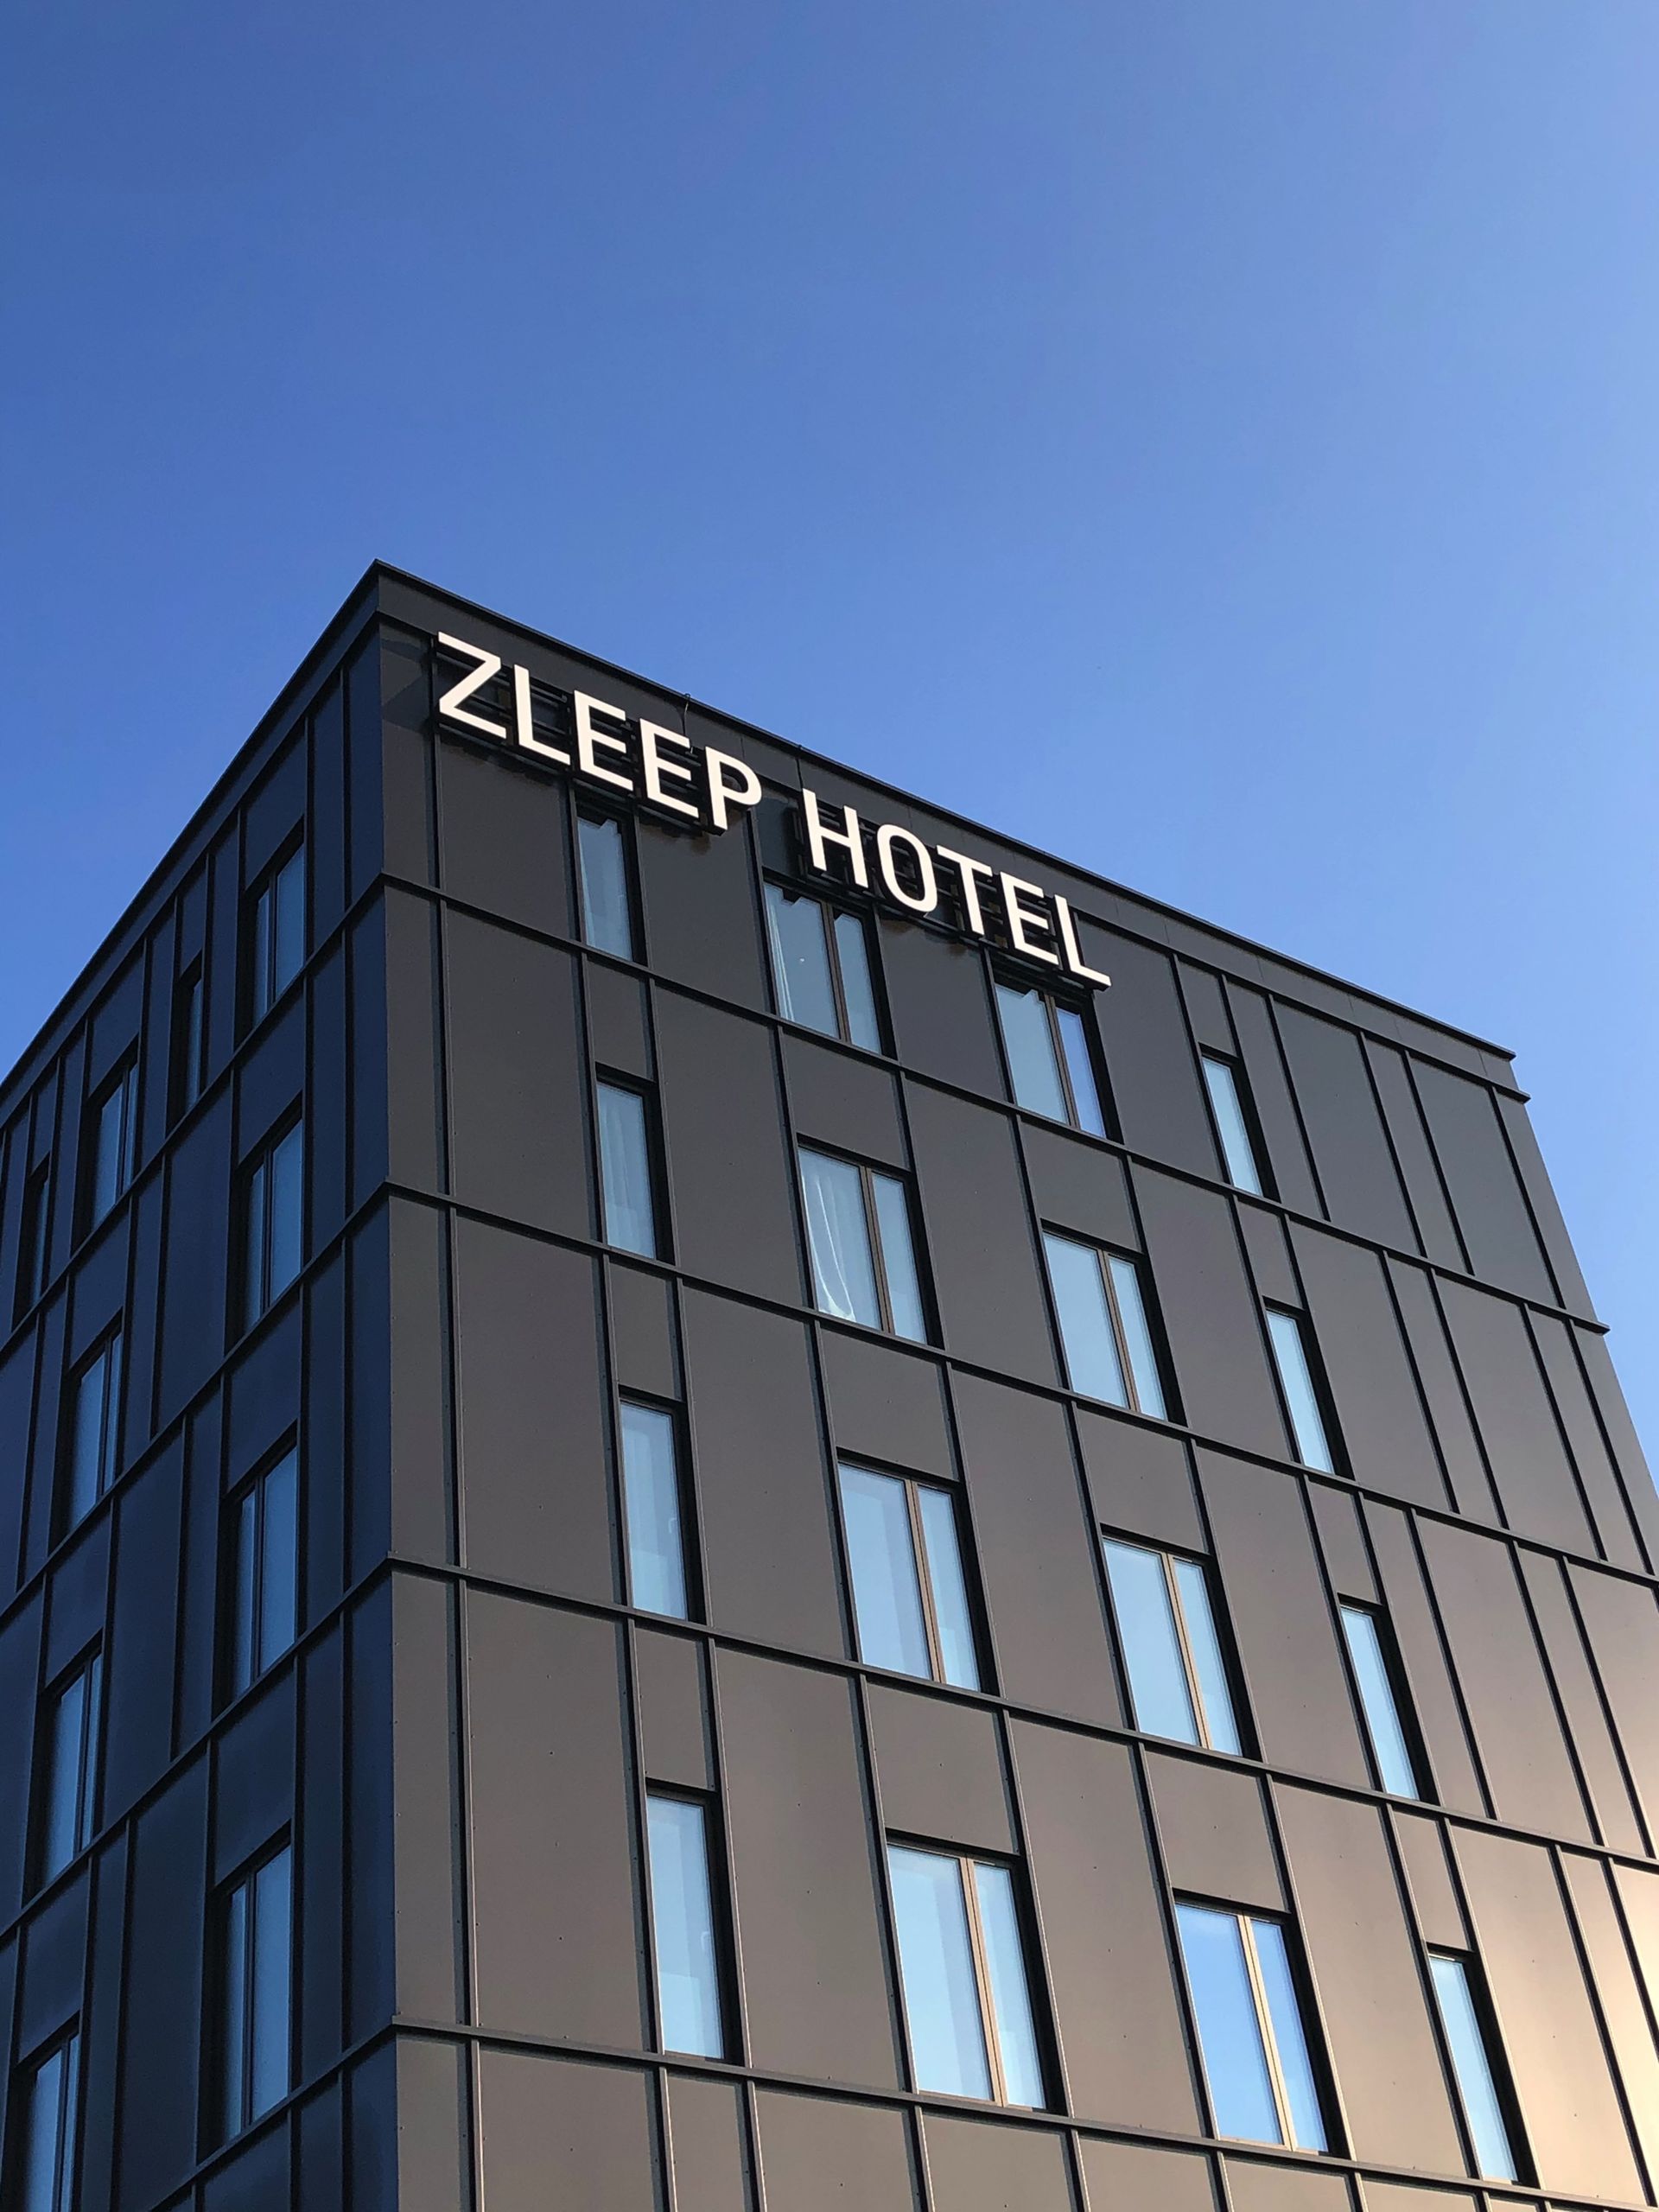 Exterior Zleep Hotels Building